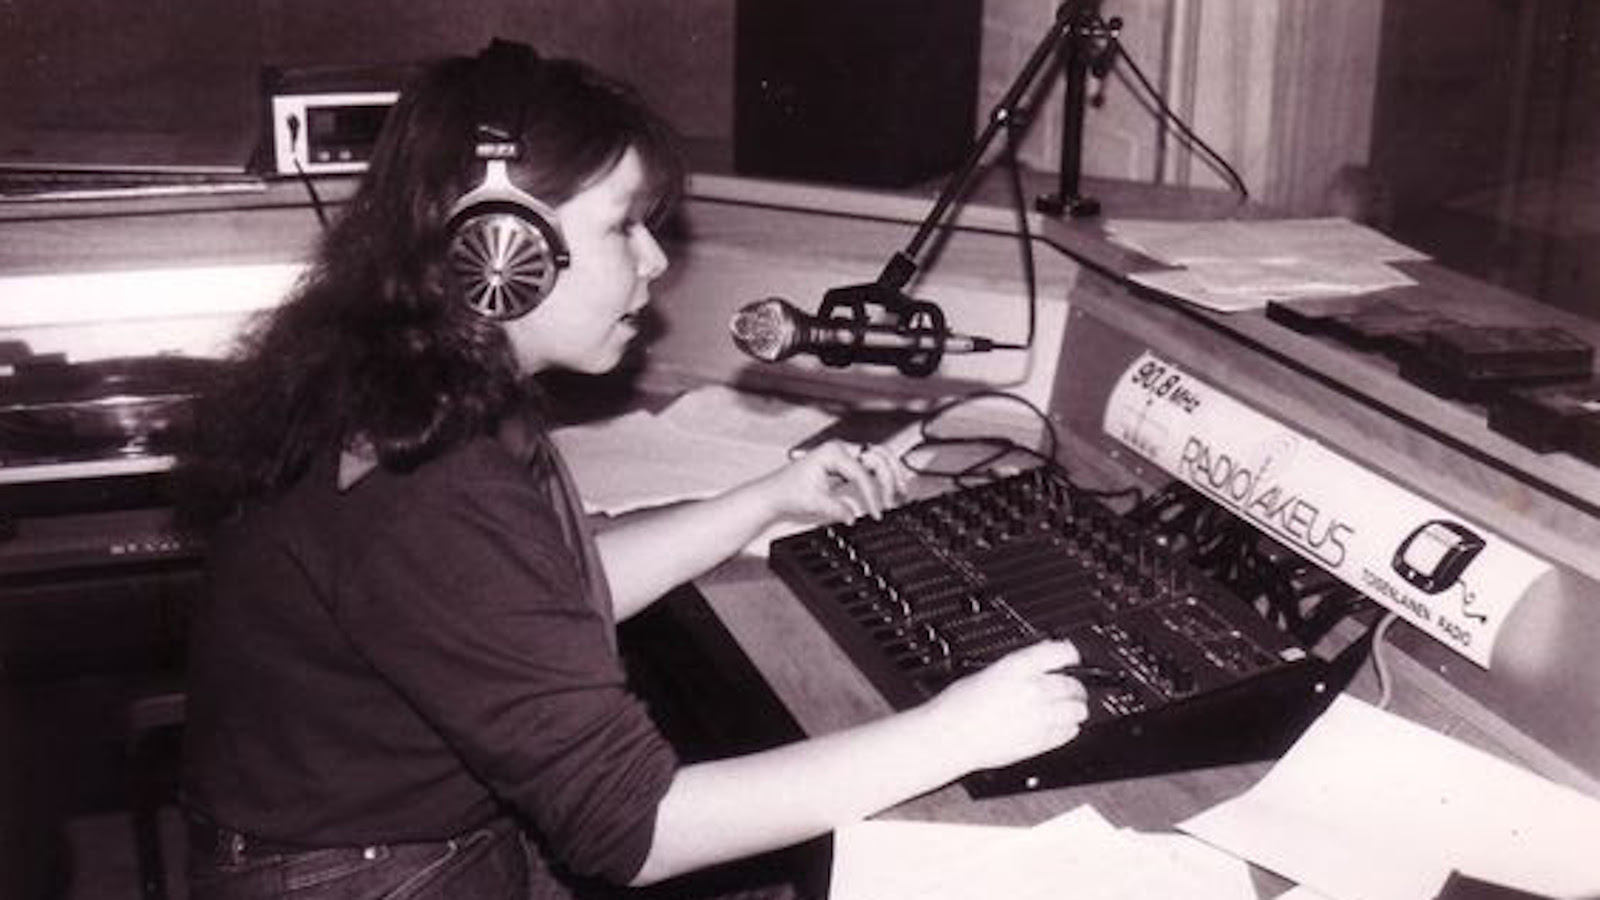 Kuvassa on Radion Lakeuden naistoimittaja työskentelemässä toimituksessa Nivalassa.